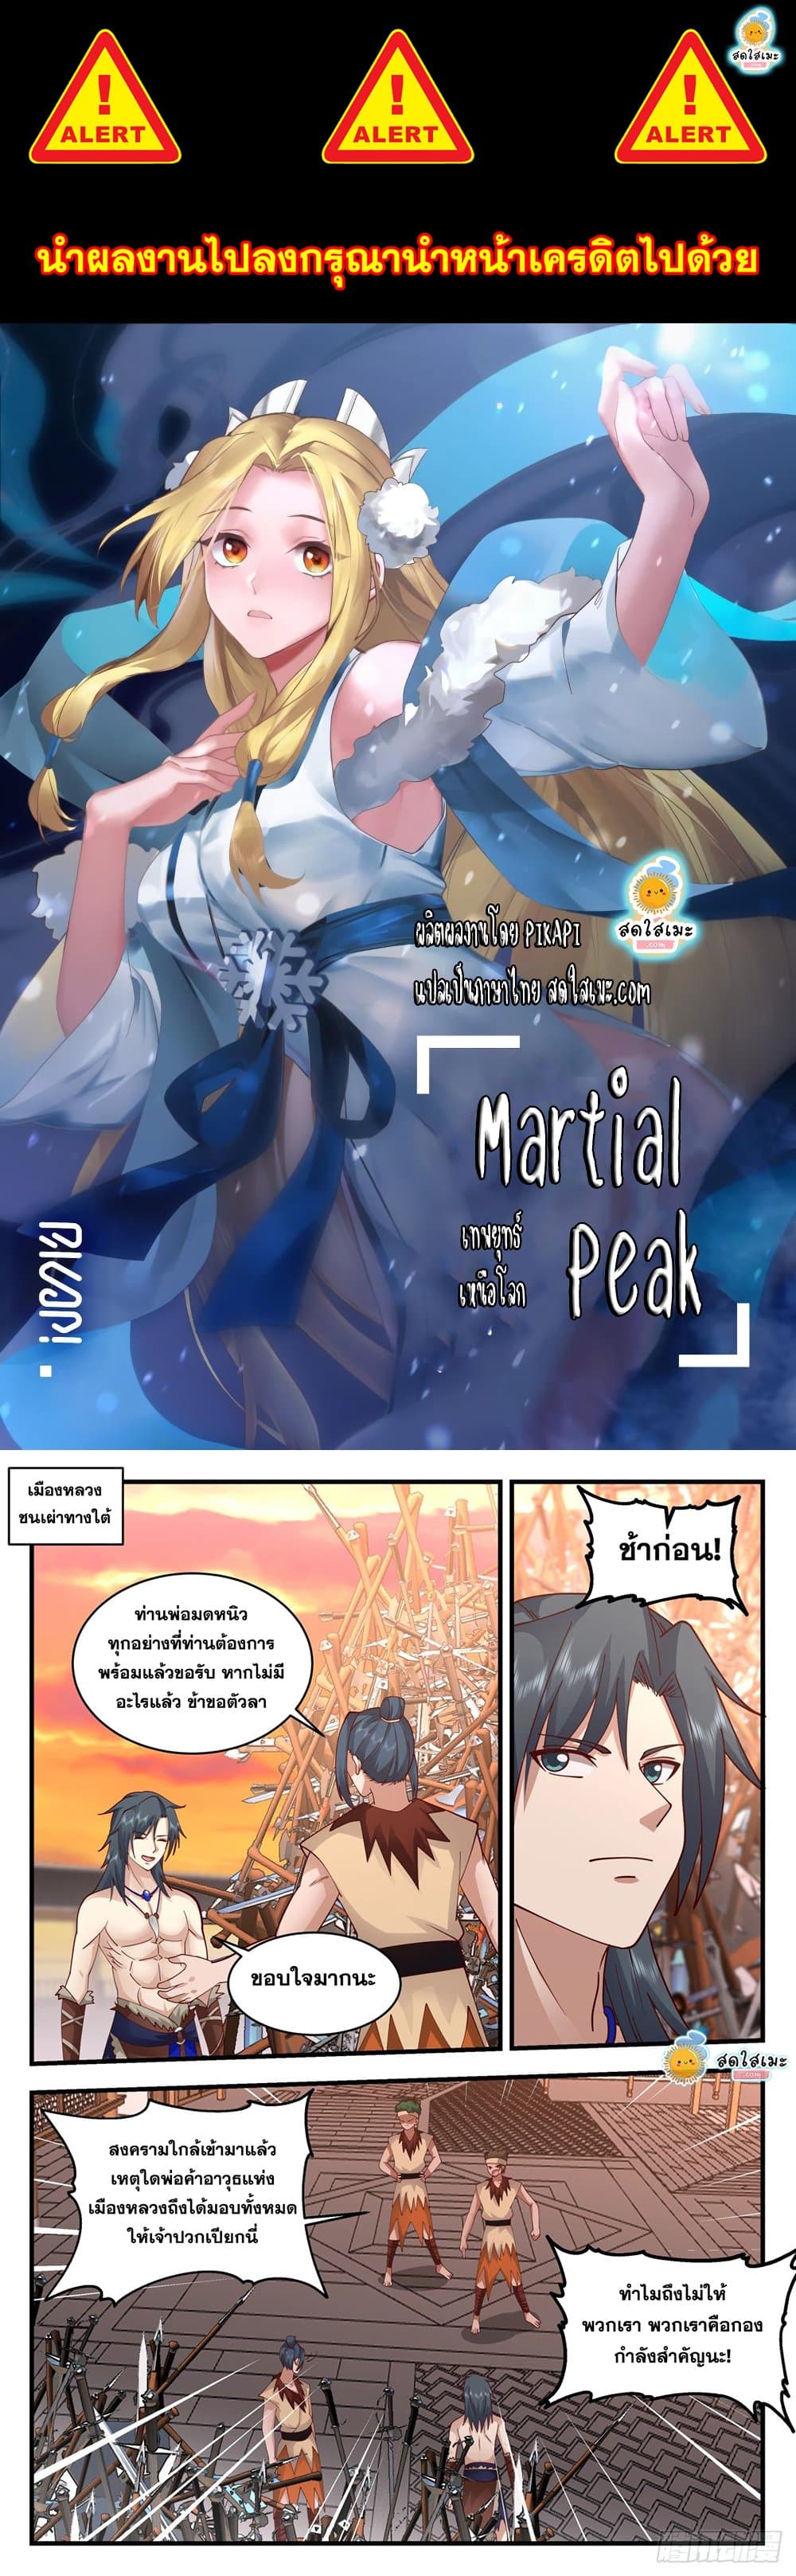 Martial Peak2014 (1)